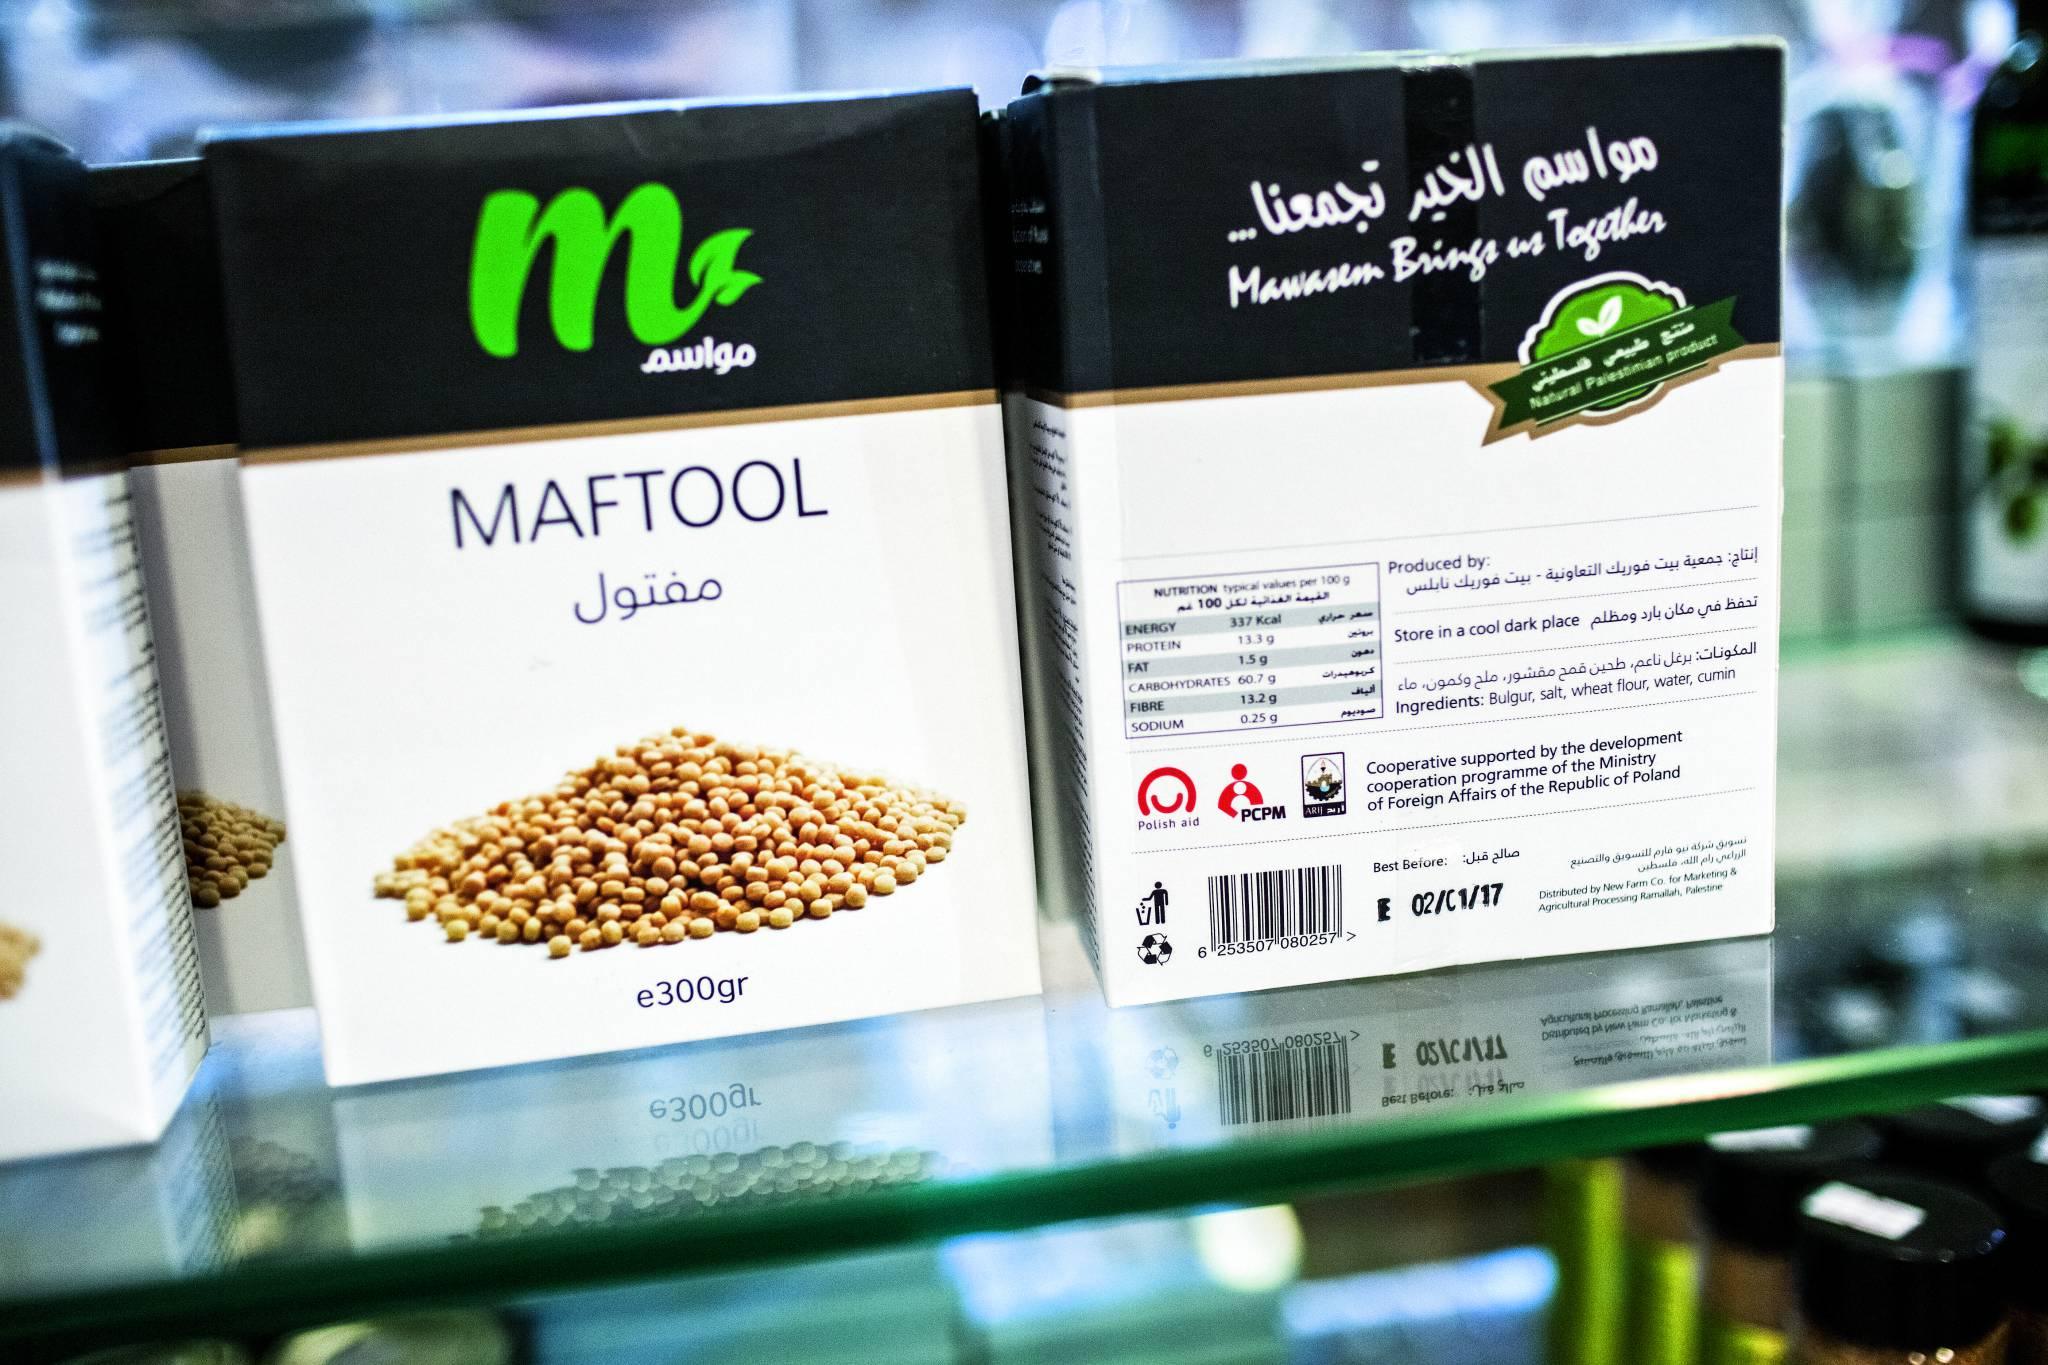  Maftoul, tradycyjny palestyński kuskus z pszenicy. (Fot. Katarzyna Boni)